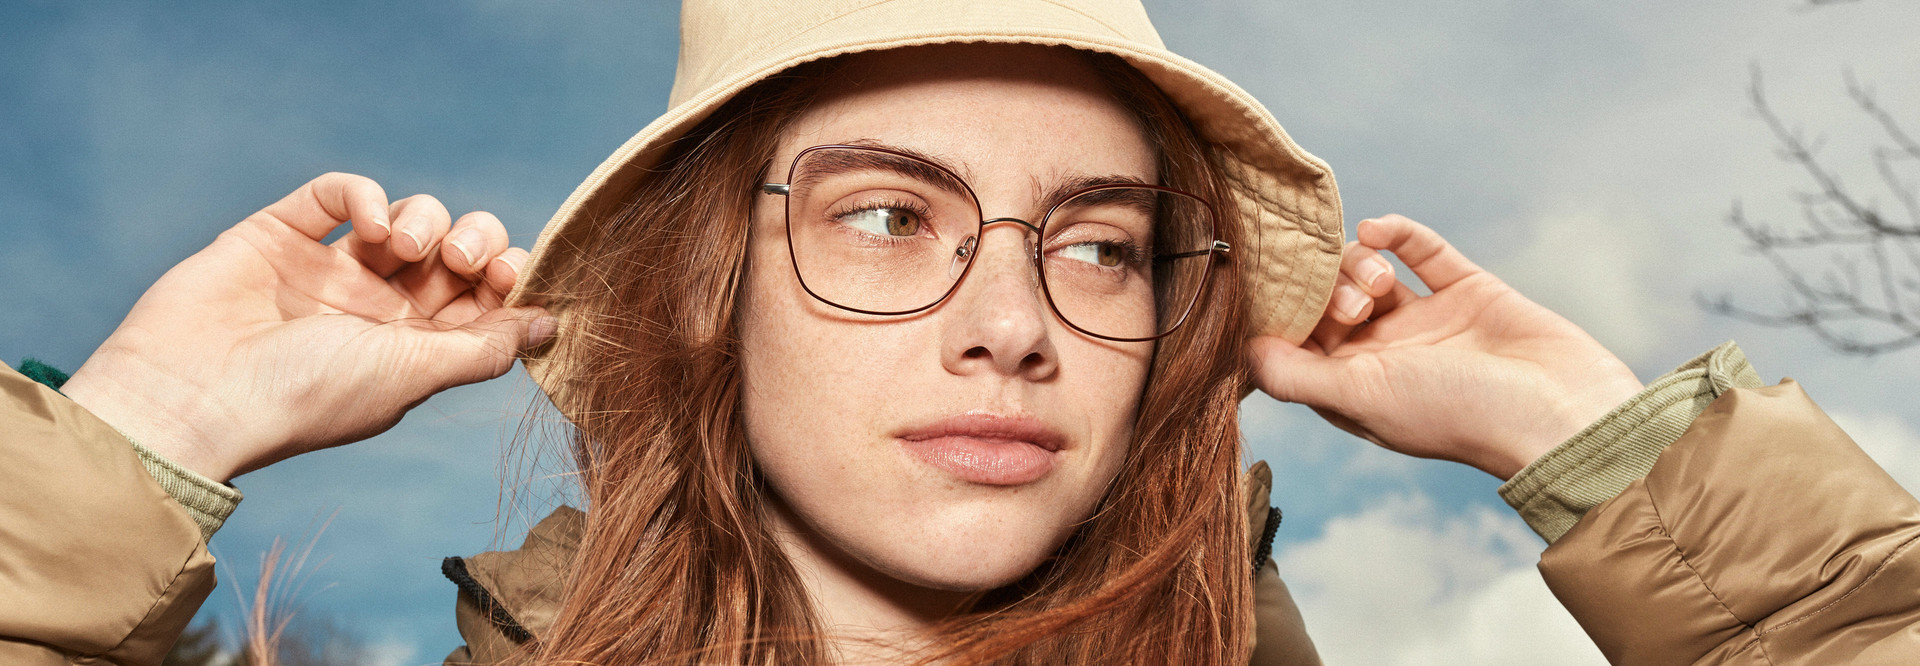 Acheter les dernières tendances en mode des lunettes